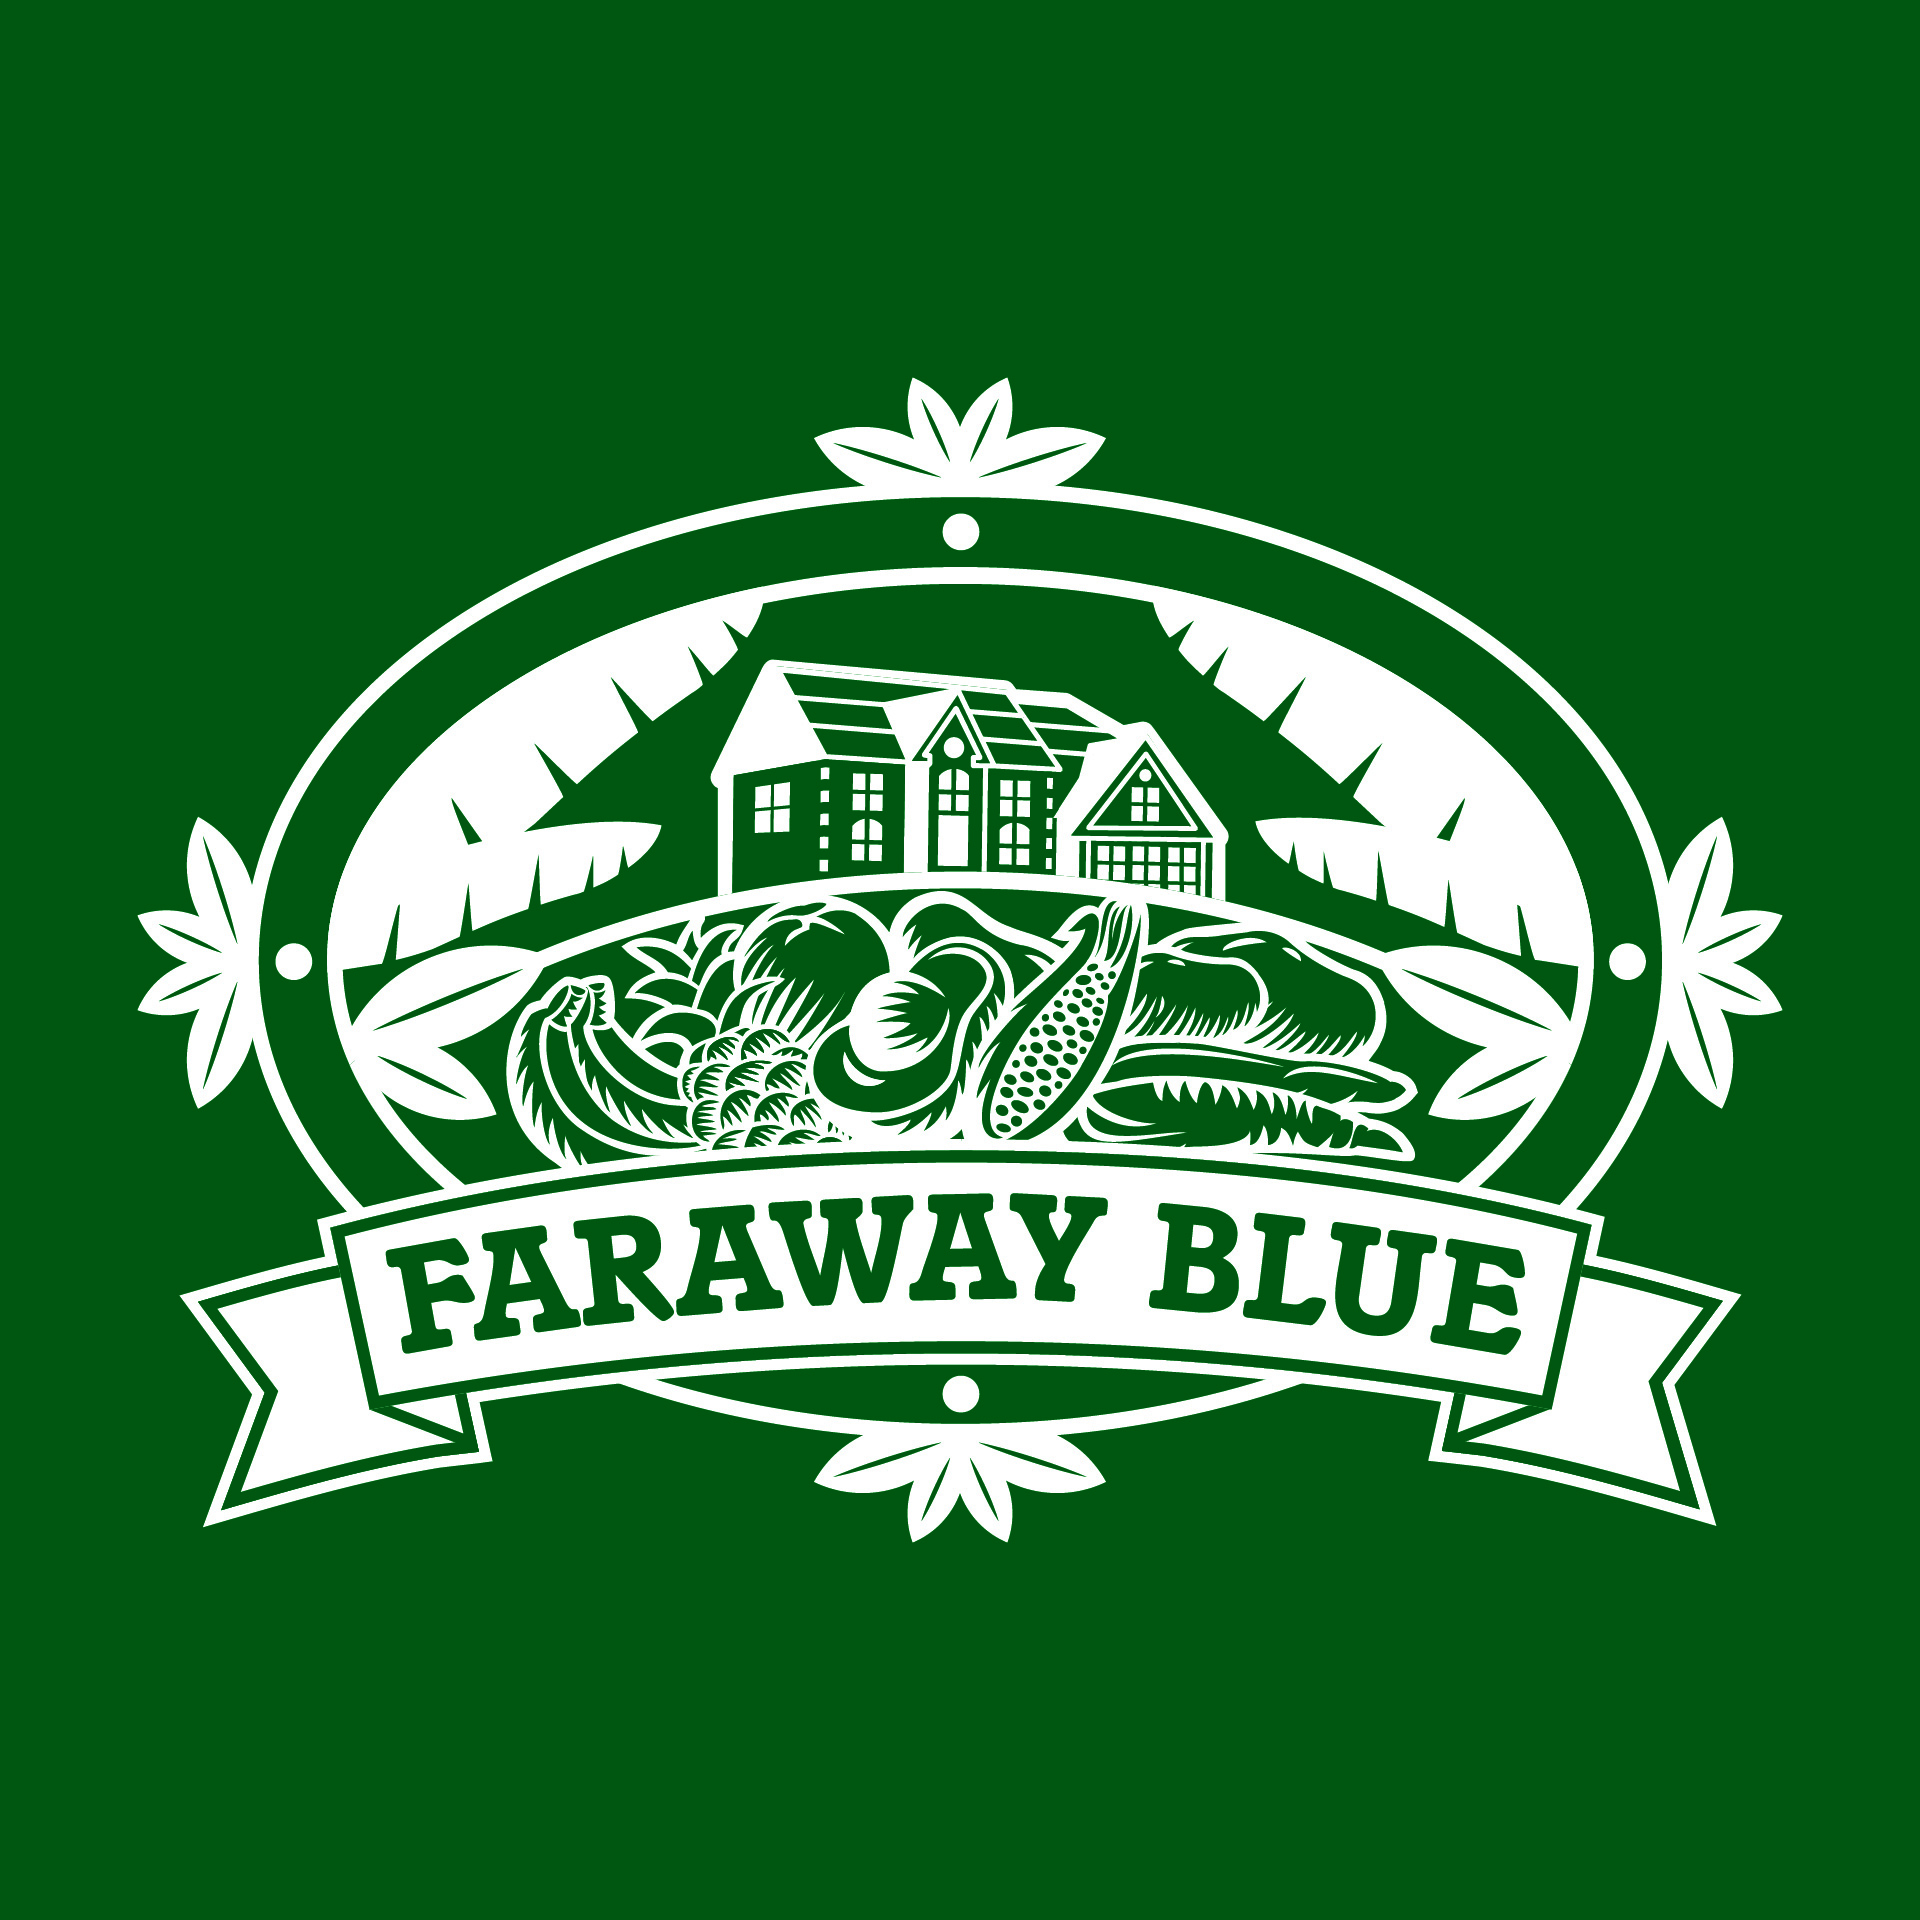 Diseño de Identidad Visual y Logotipo para la marca Faraway Blue